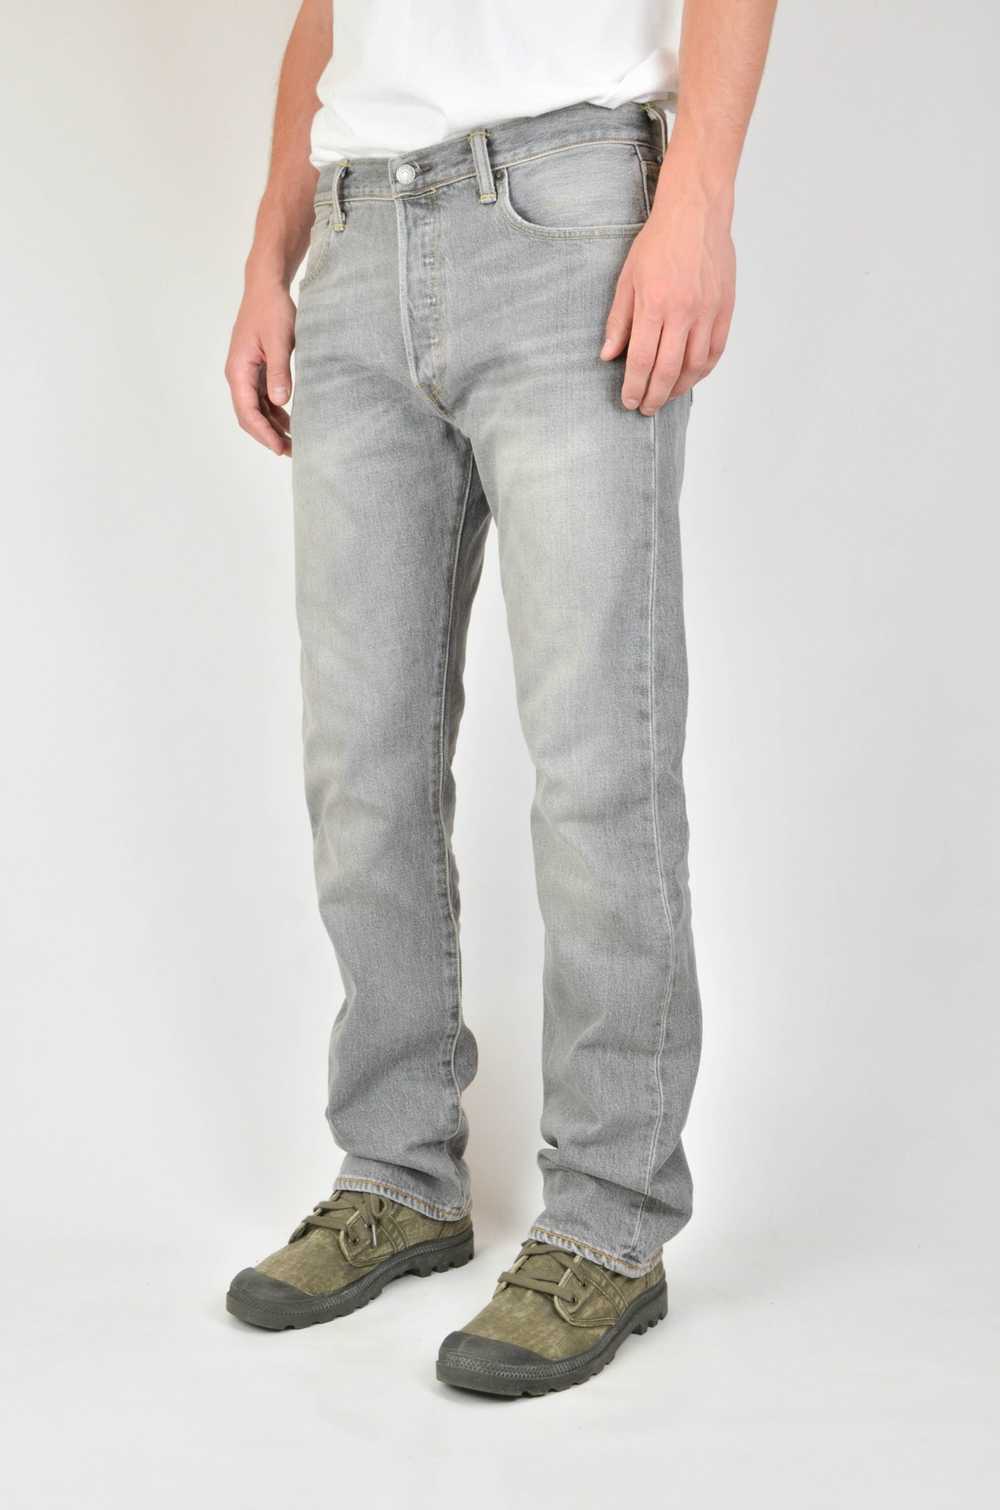 Levi's Vintage Levis 501 Jeans Grey - image 1